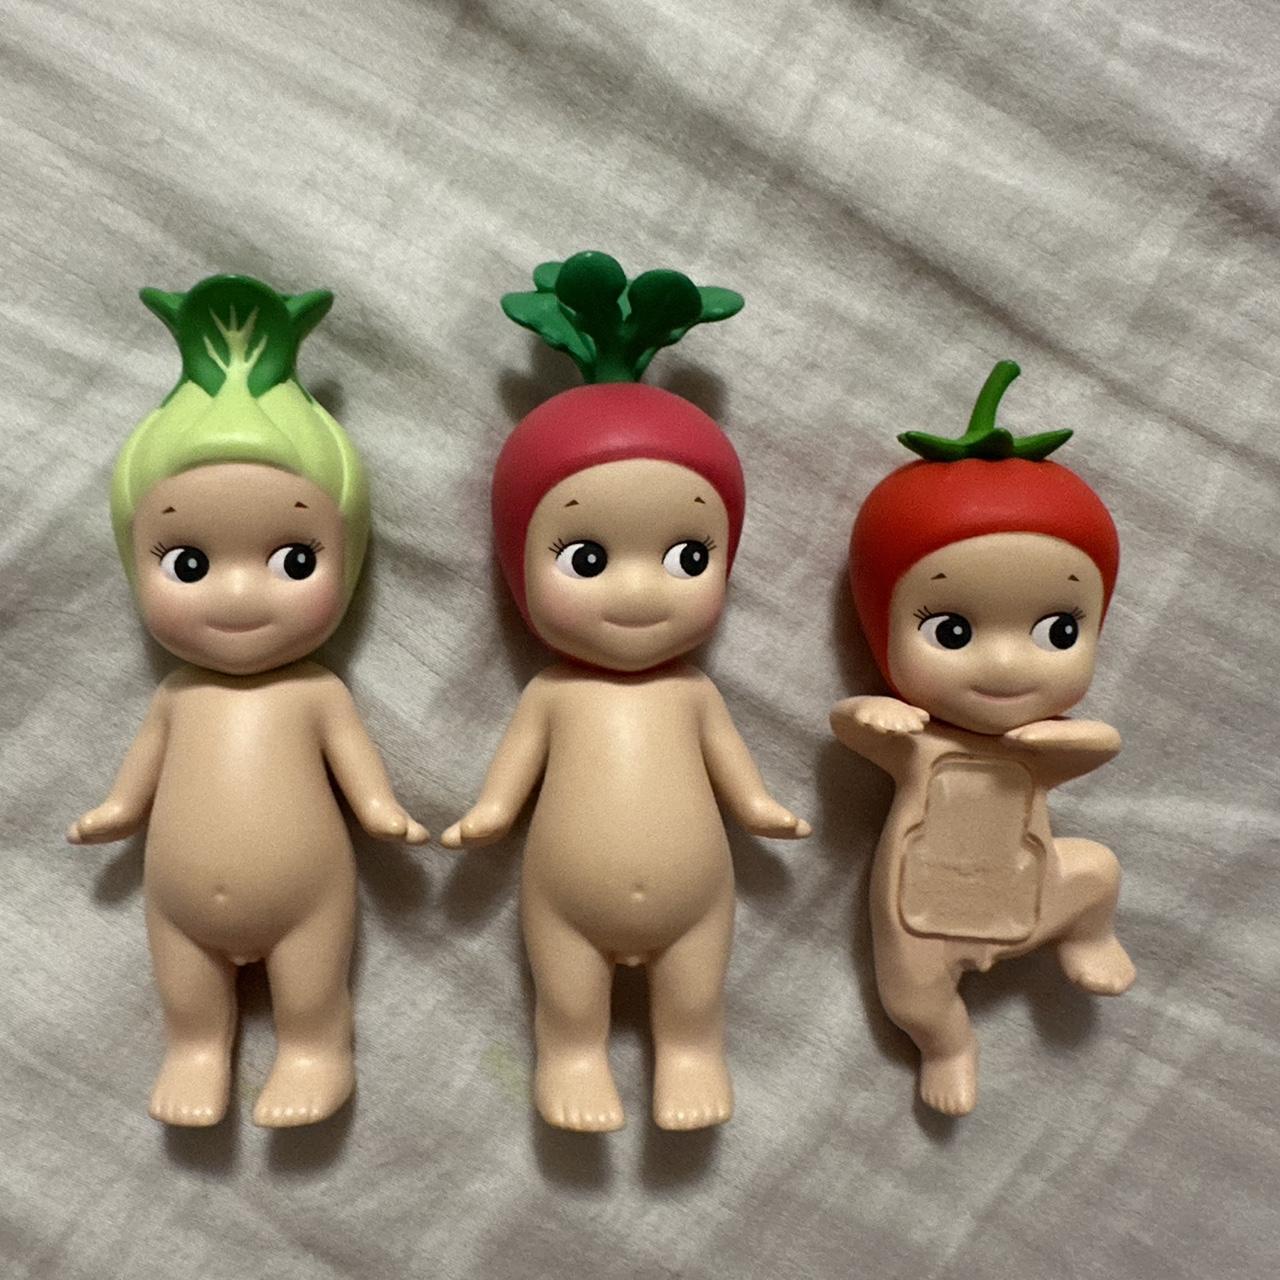 Figurine Vegetable series